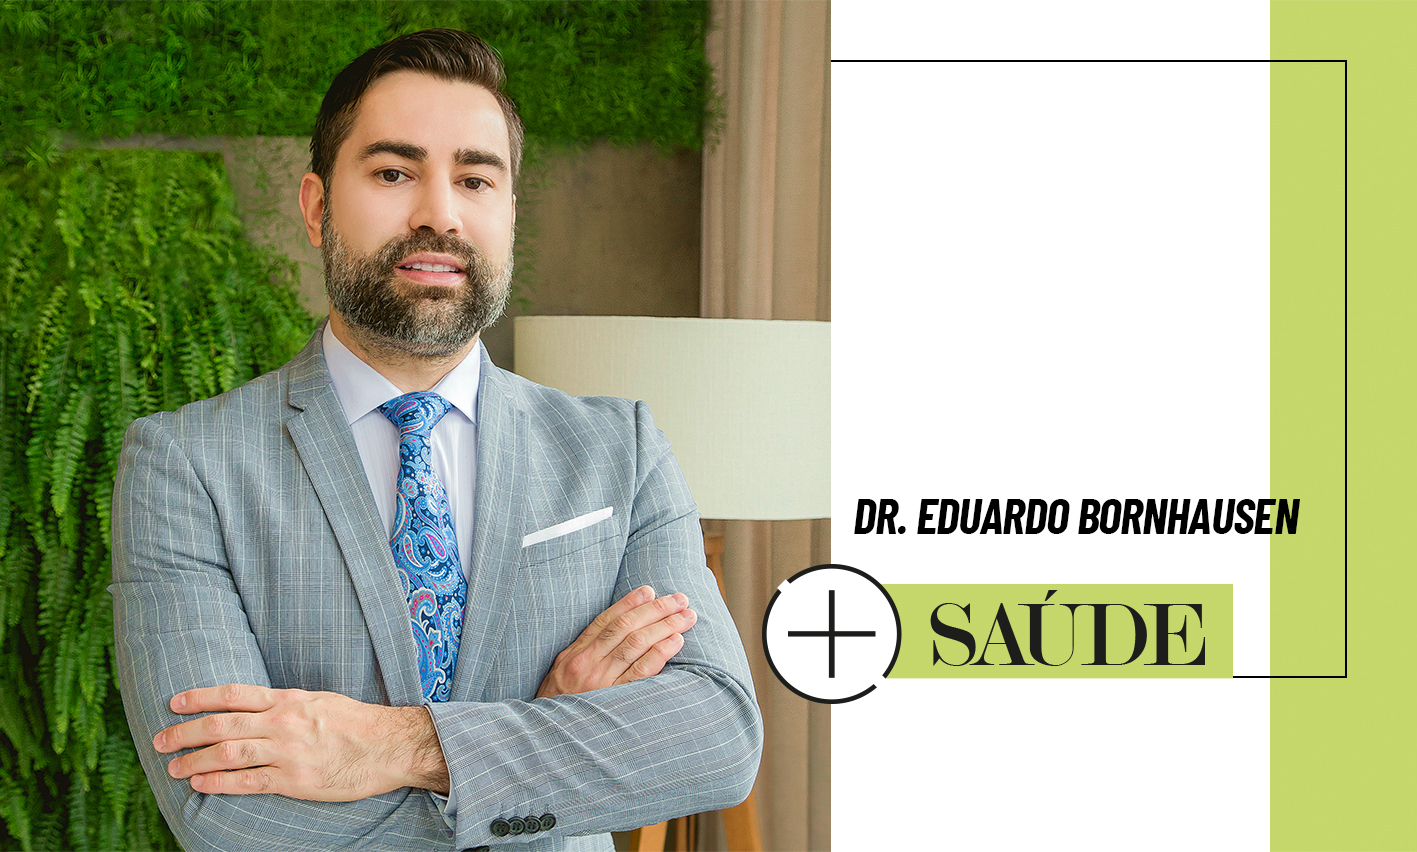 Dermatologista Dr. Eduardo Bornhausen, membro da Sociedade Brasileira de Dermatologia